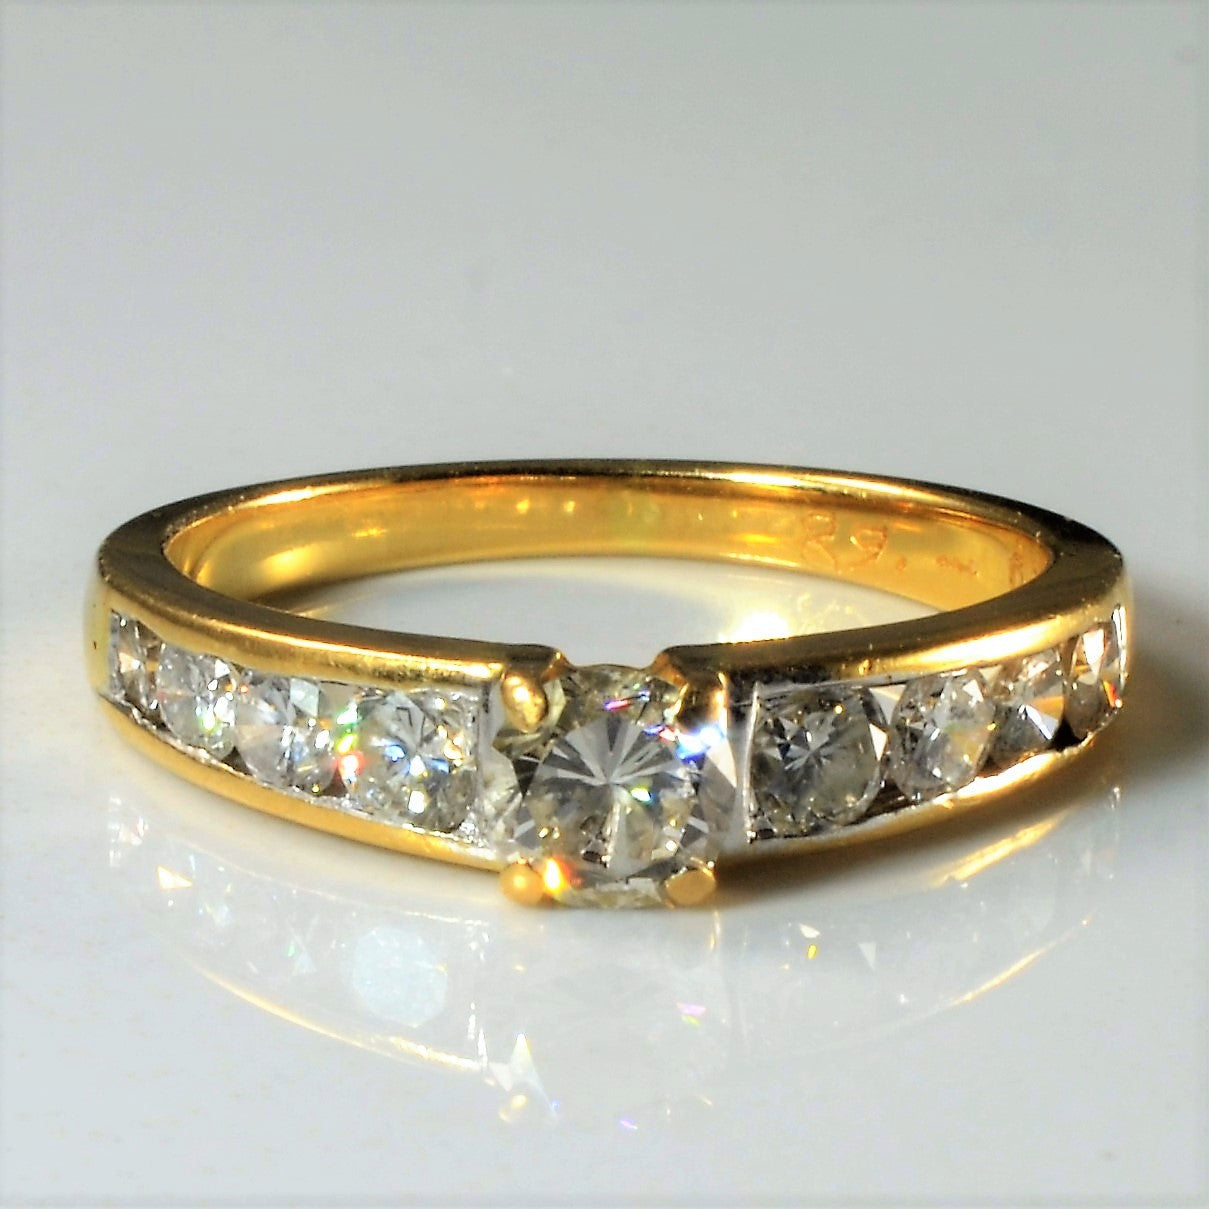 Low Profile Channel Set Diamond Engagement Ring | 0.68ctw | SZ 6.75 |